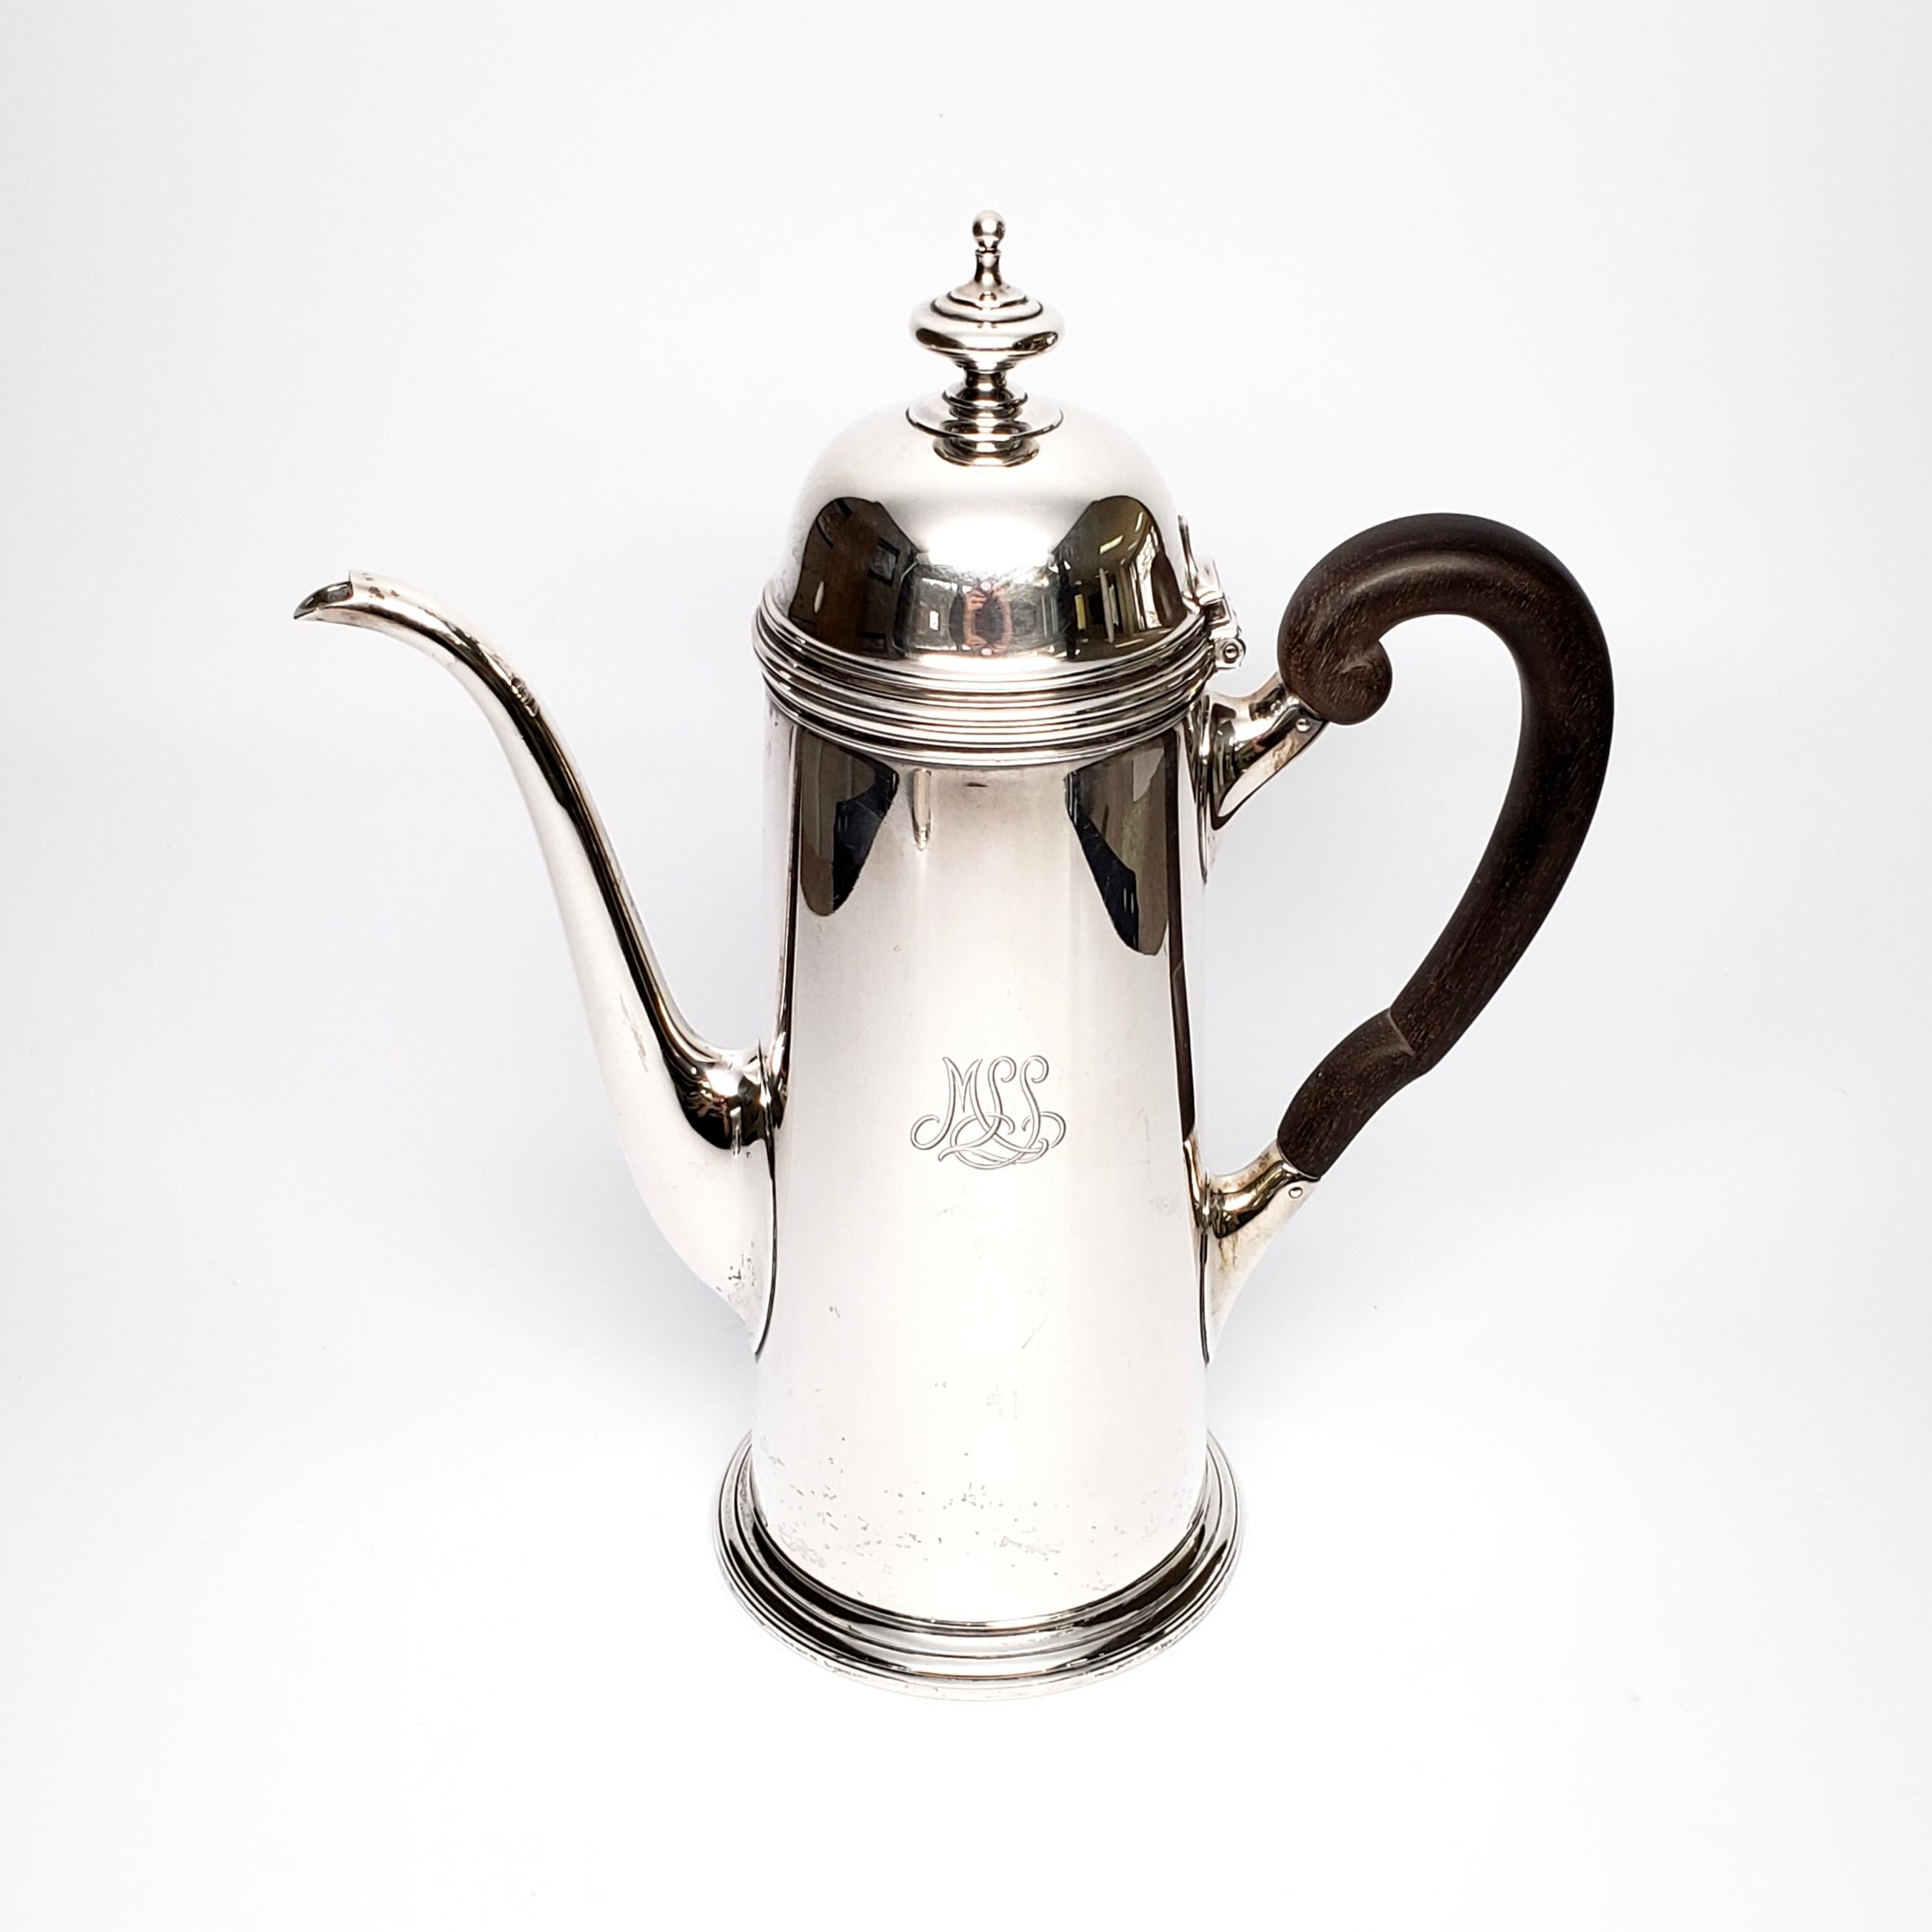 Vintage Sterling Silber 3 Stück Kaffee-Set, von Tiffany & Co.

Die 3 Teile dieses schönen Tiffany & Co Sets bestehen aus einer hohen Kaffeekanne, einem offenen Milchkännchen und einer Zuckerdose mit Deckel. Alle Stücke sind mit einem M